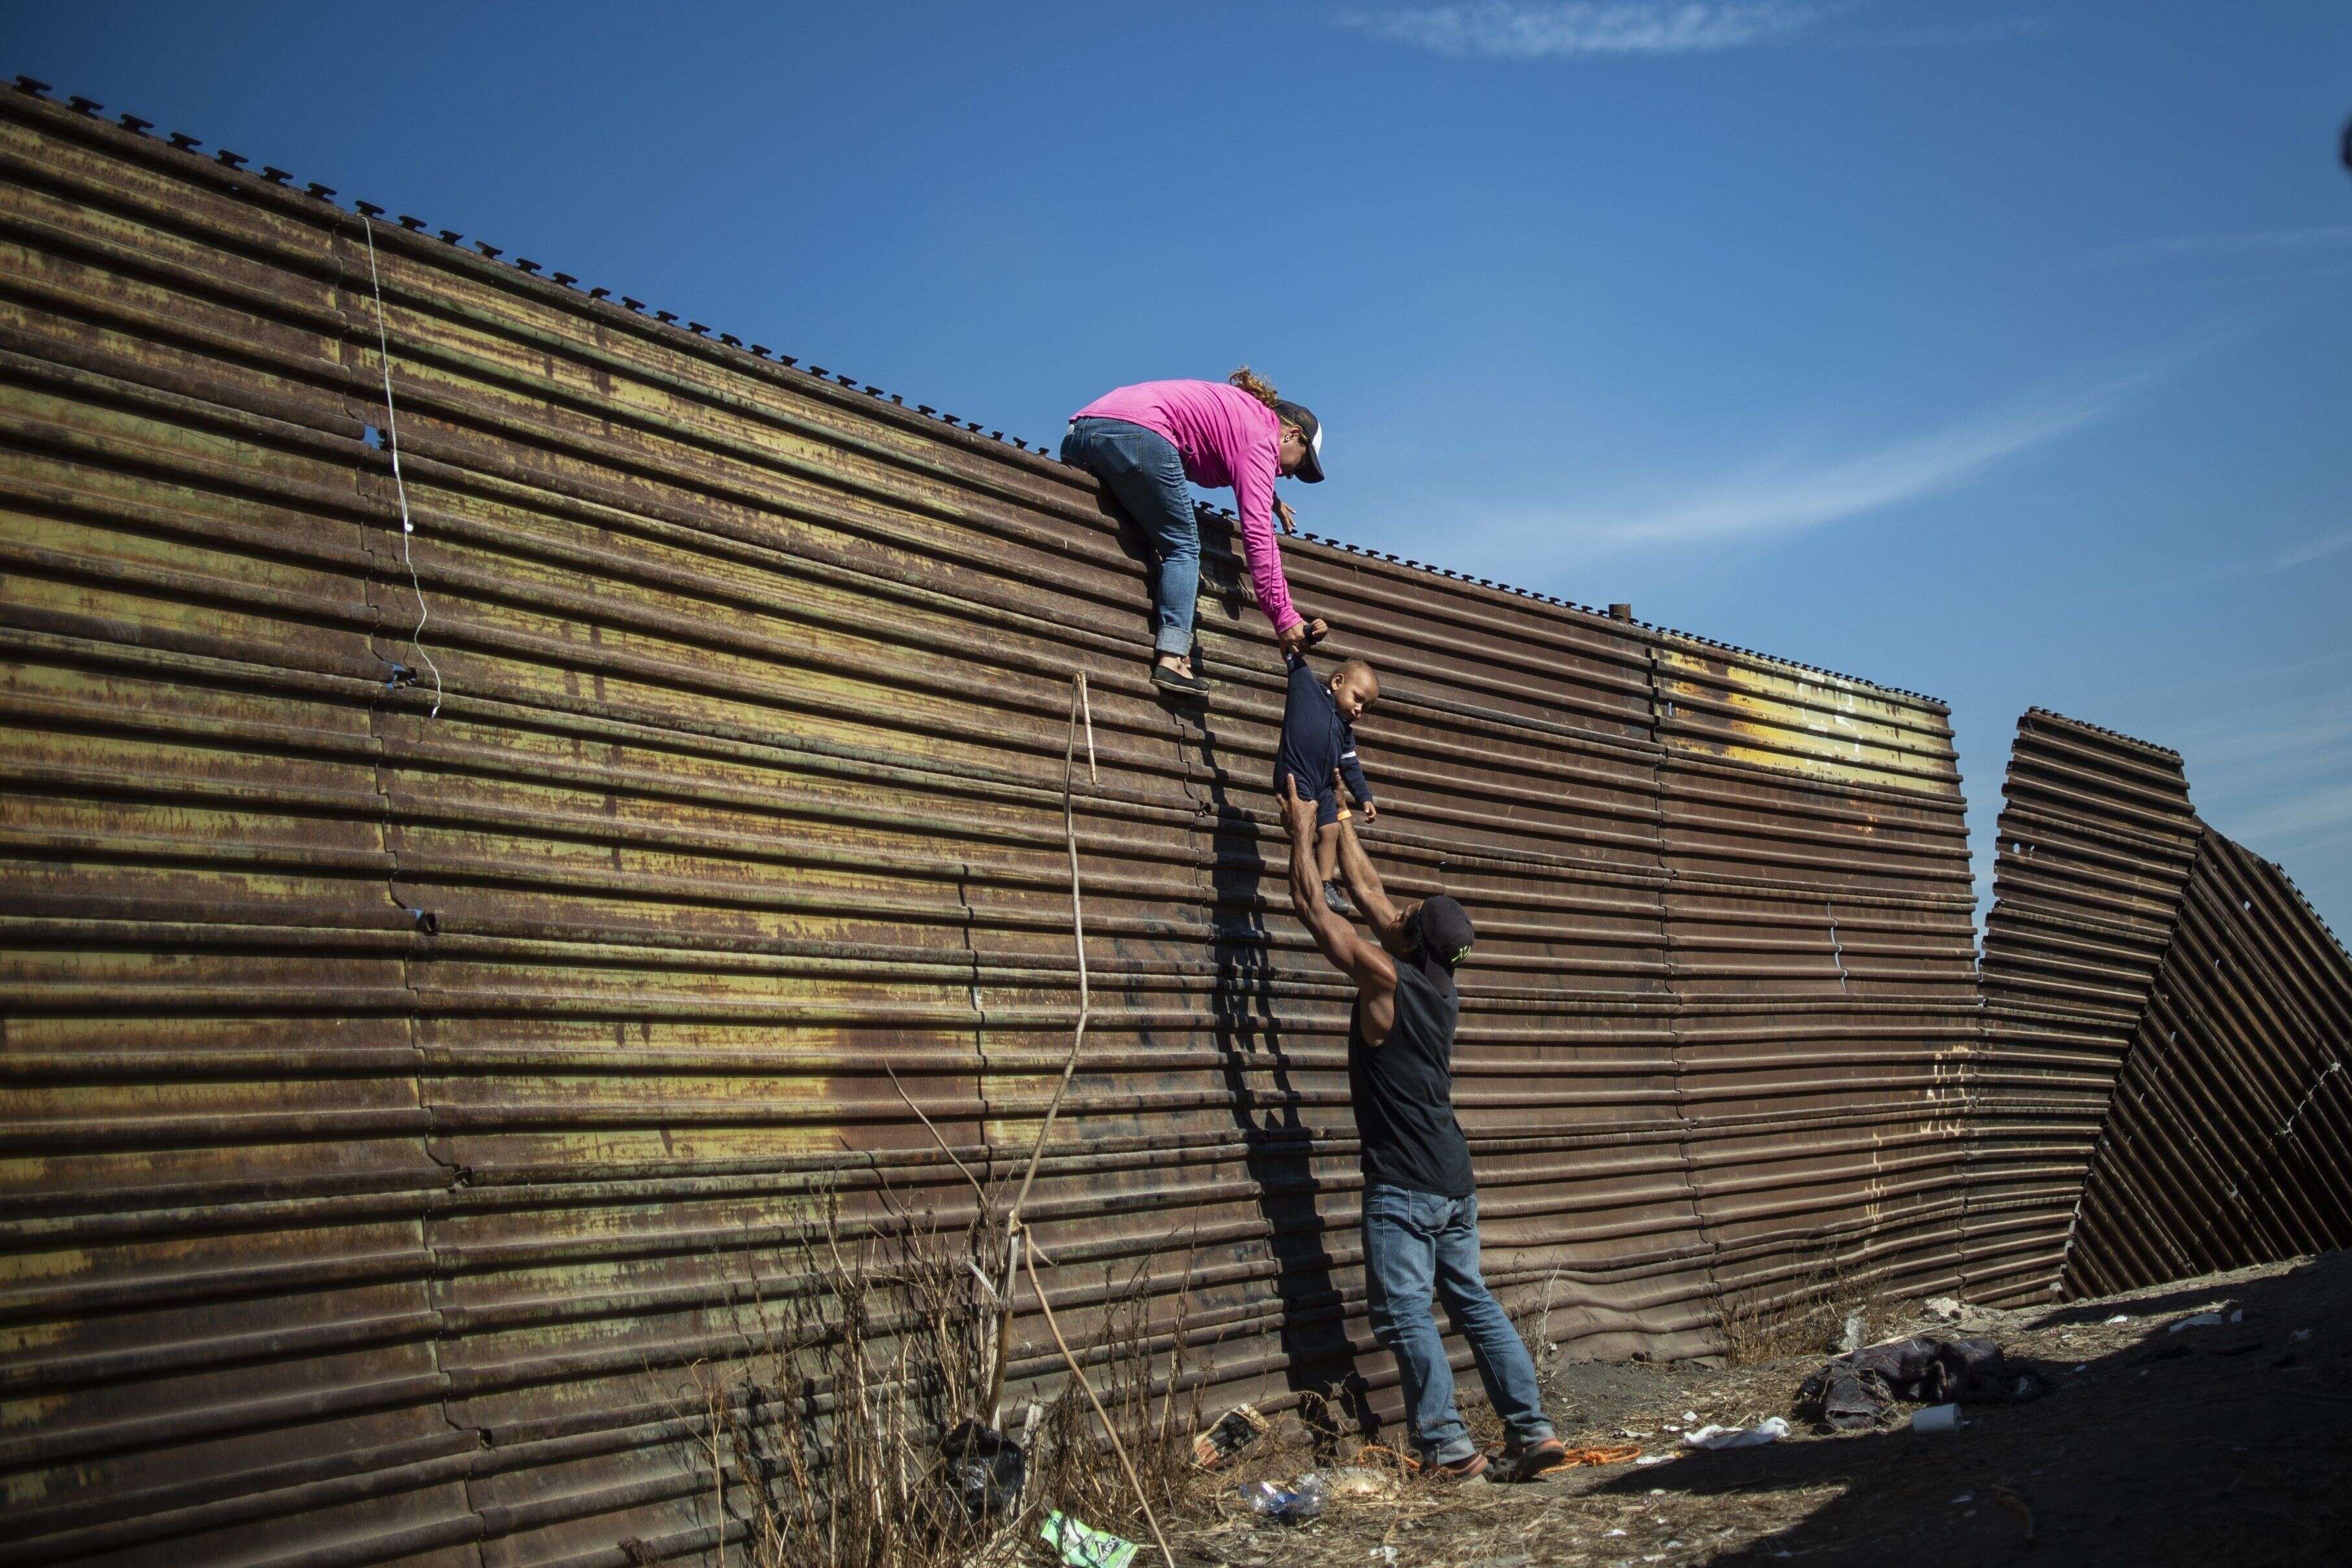 25 novembre - Des migrants d'Amérique centrale escaladent un mur près du passage frontalier d'El Chaparral, à Tijuana au Mexique.